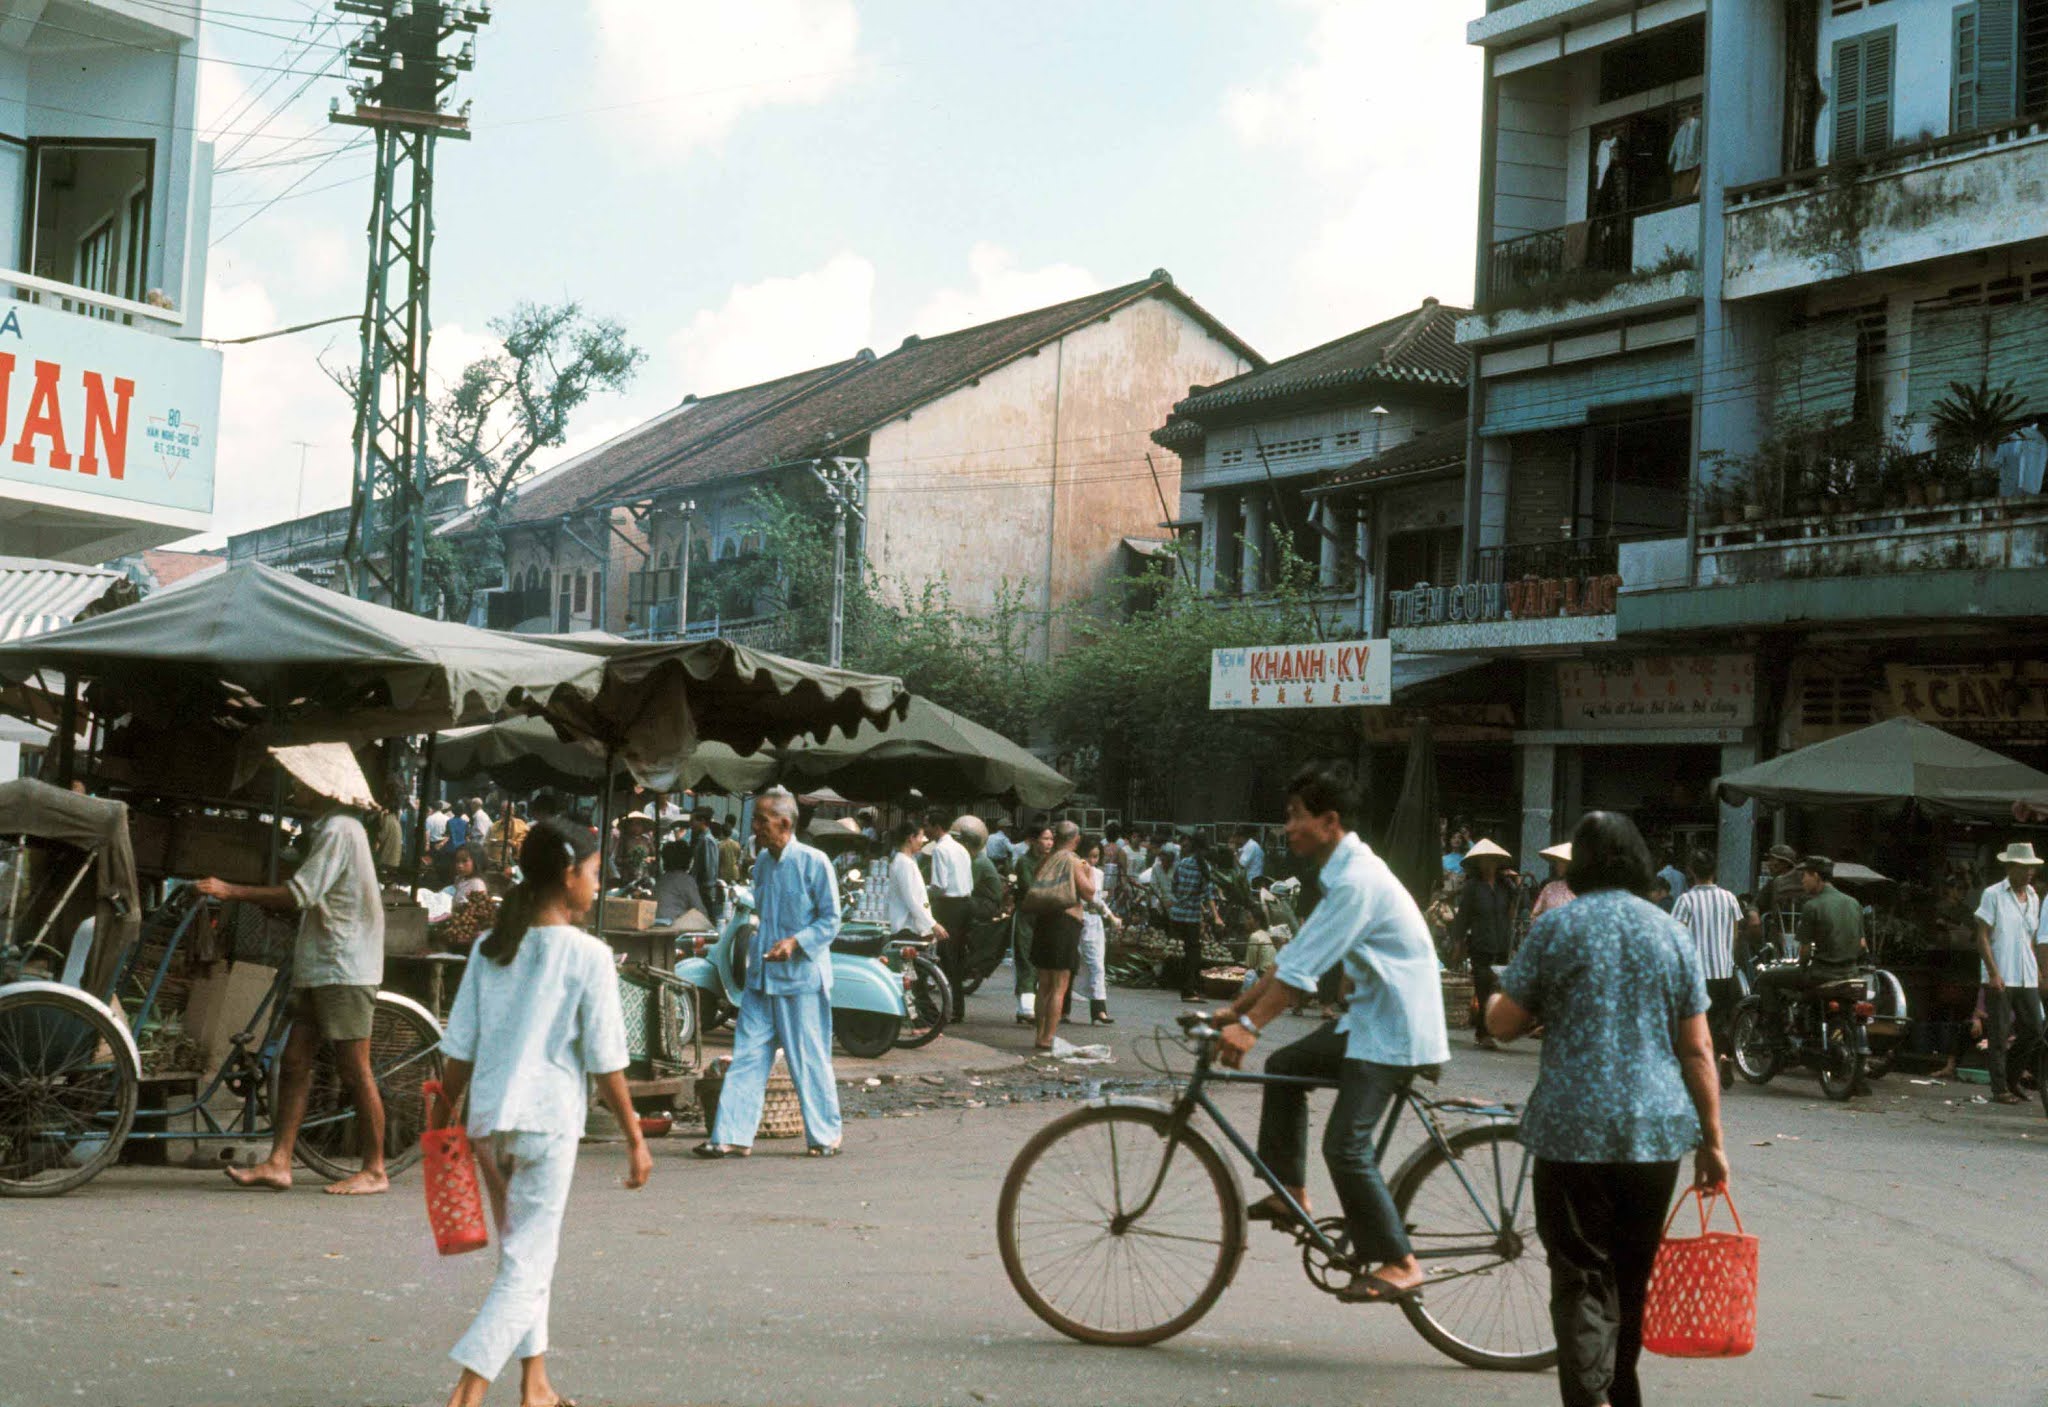 Quầy lạp xưởng, thịt quay, tiệm thuốc bắc của người Hoa ở chợ cũ Tôn Thất Đạm trước 1975